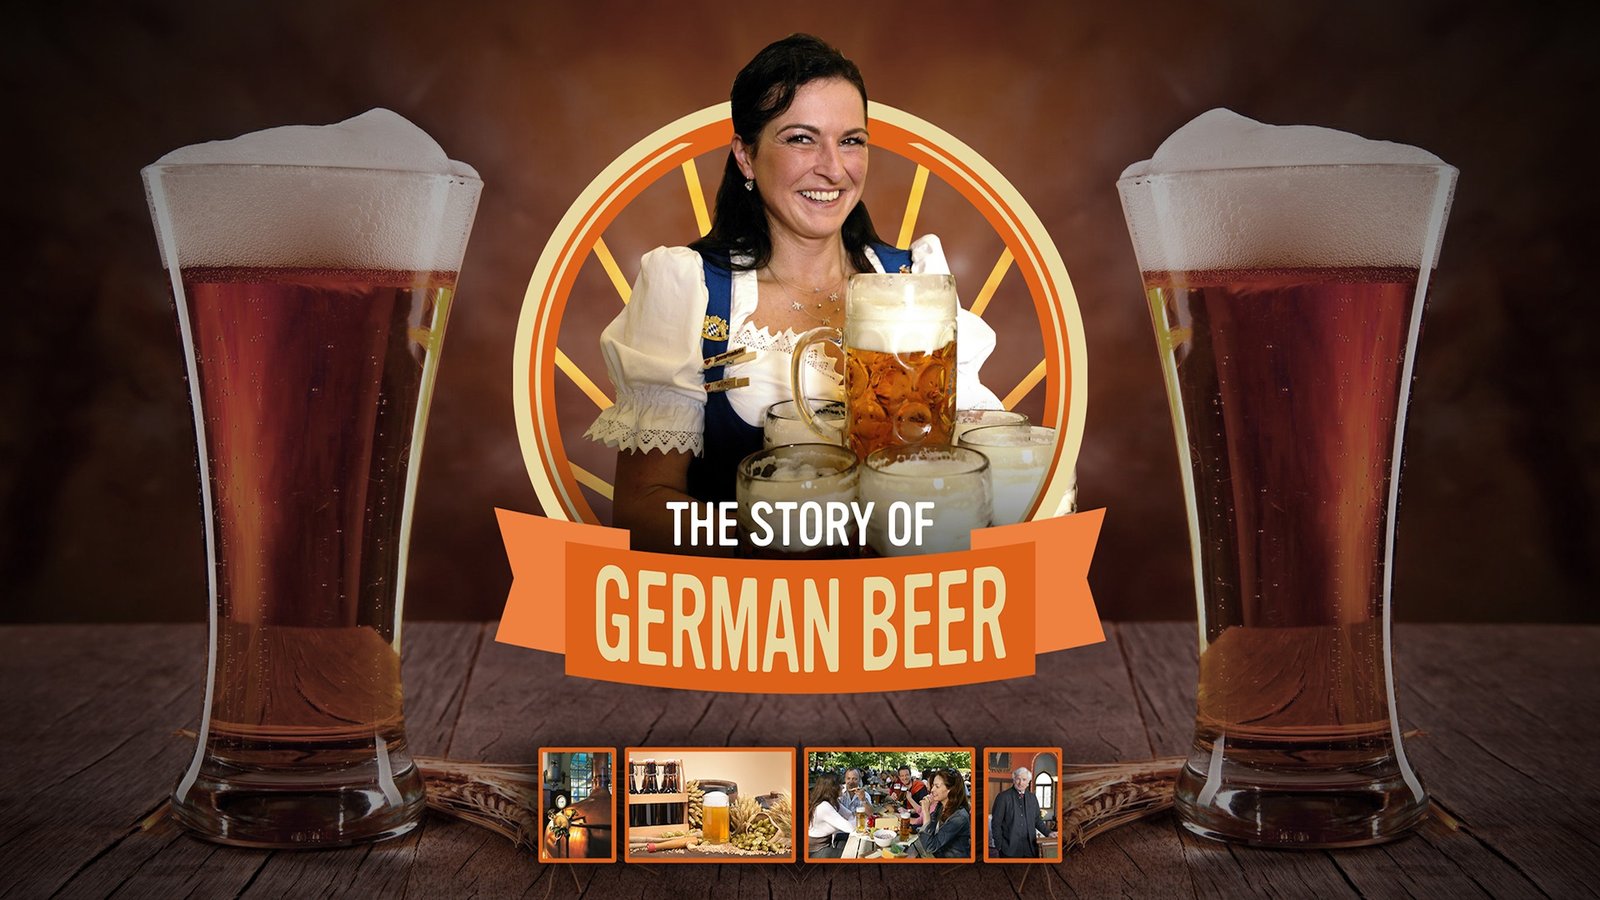 The Story of German Beer